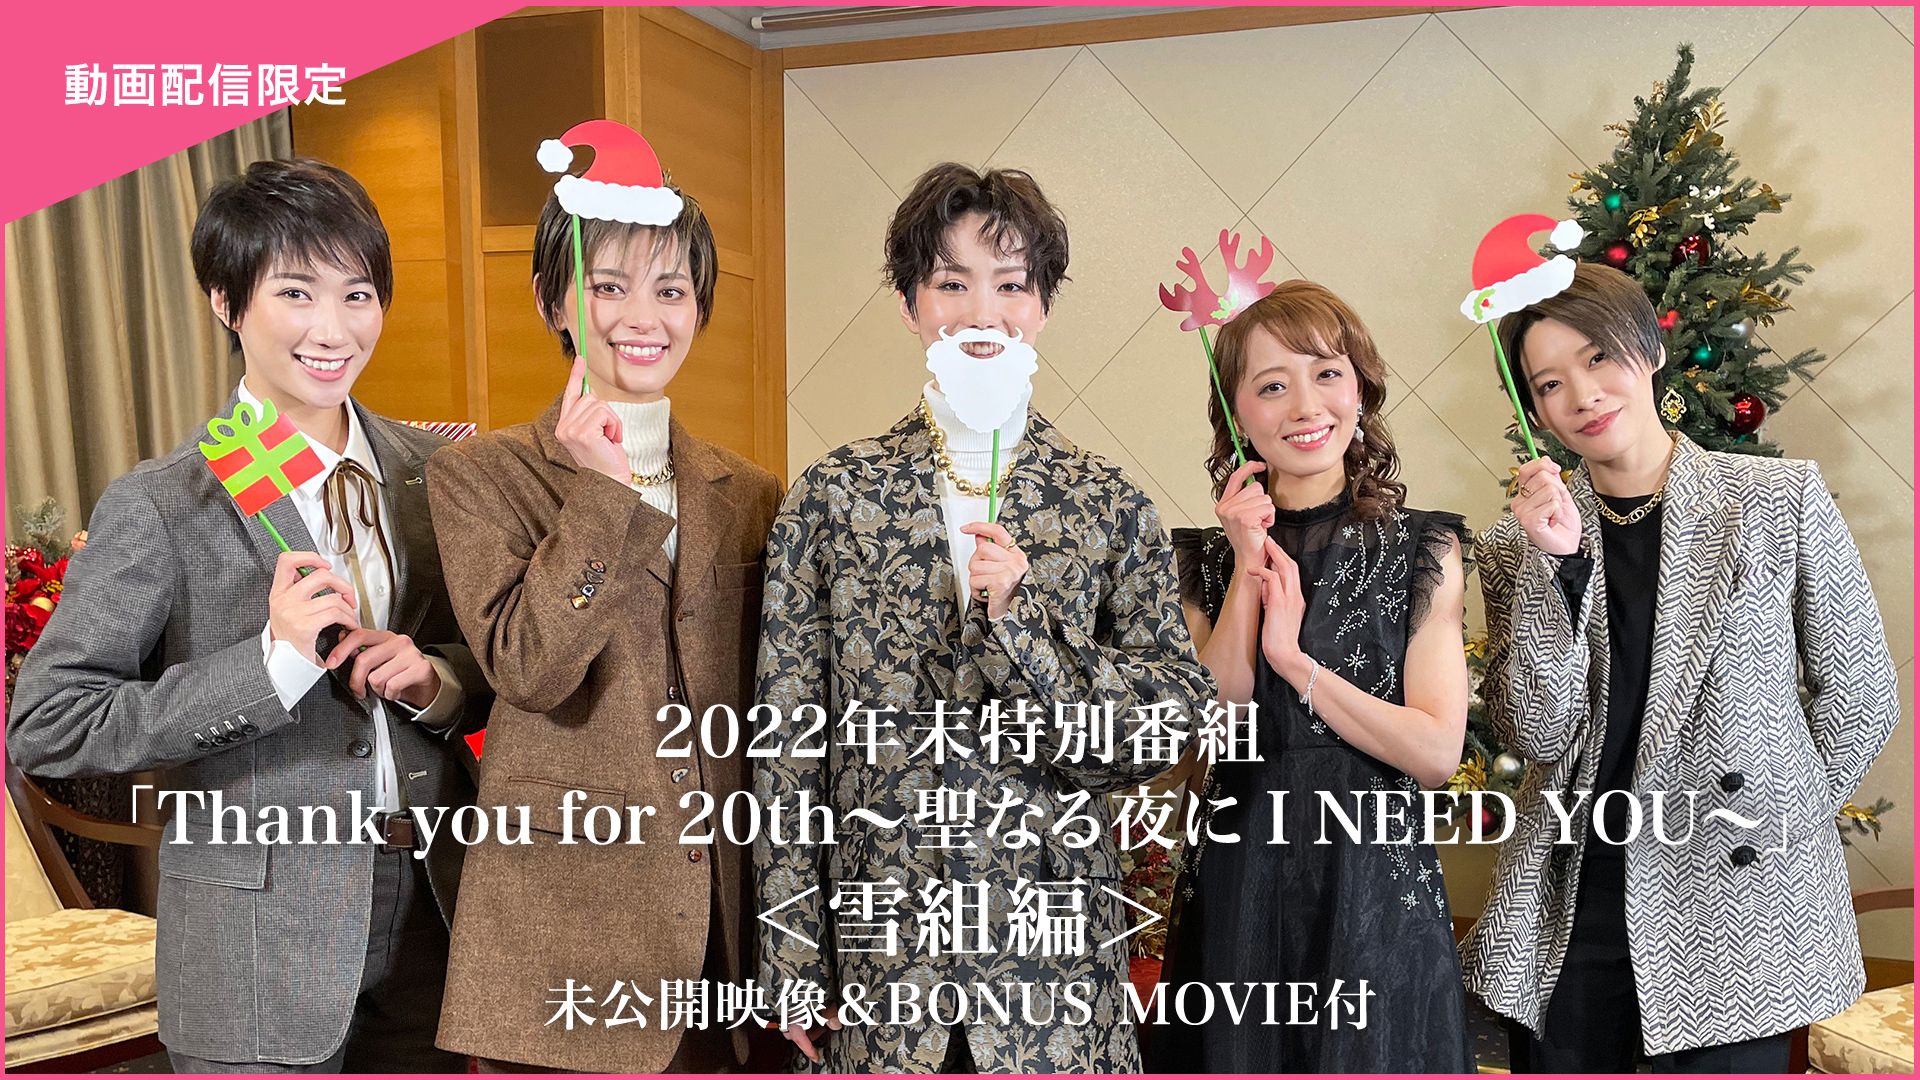 2022年末特別番組「Thank you for 20th〜聖なる夜に I NEED YOU〜」<雪組編>未公開映像&BONUS MOVIE付